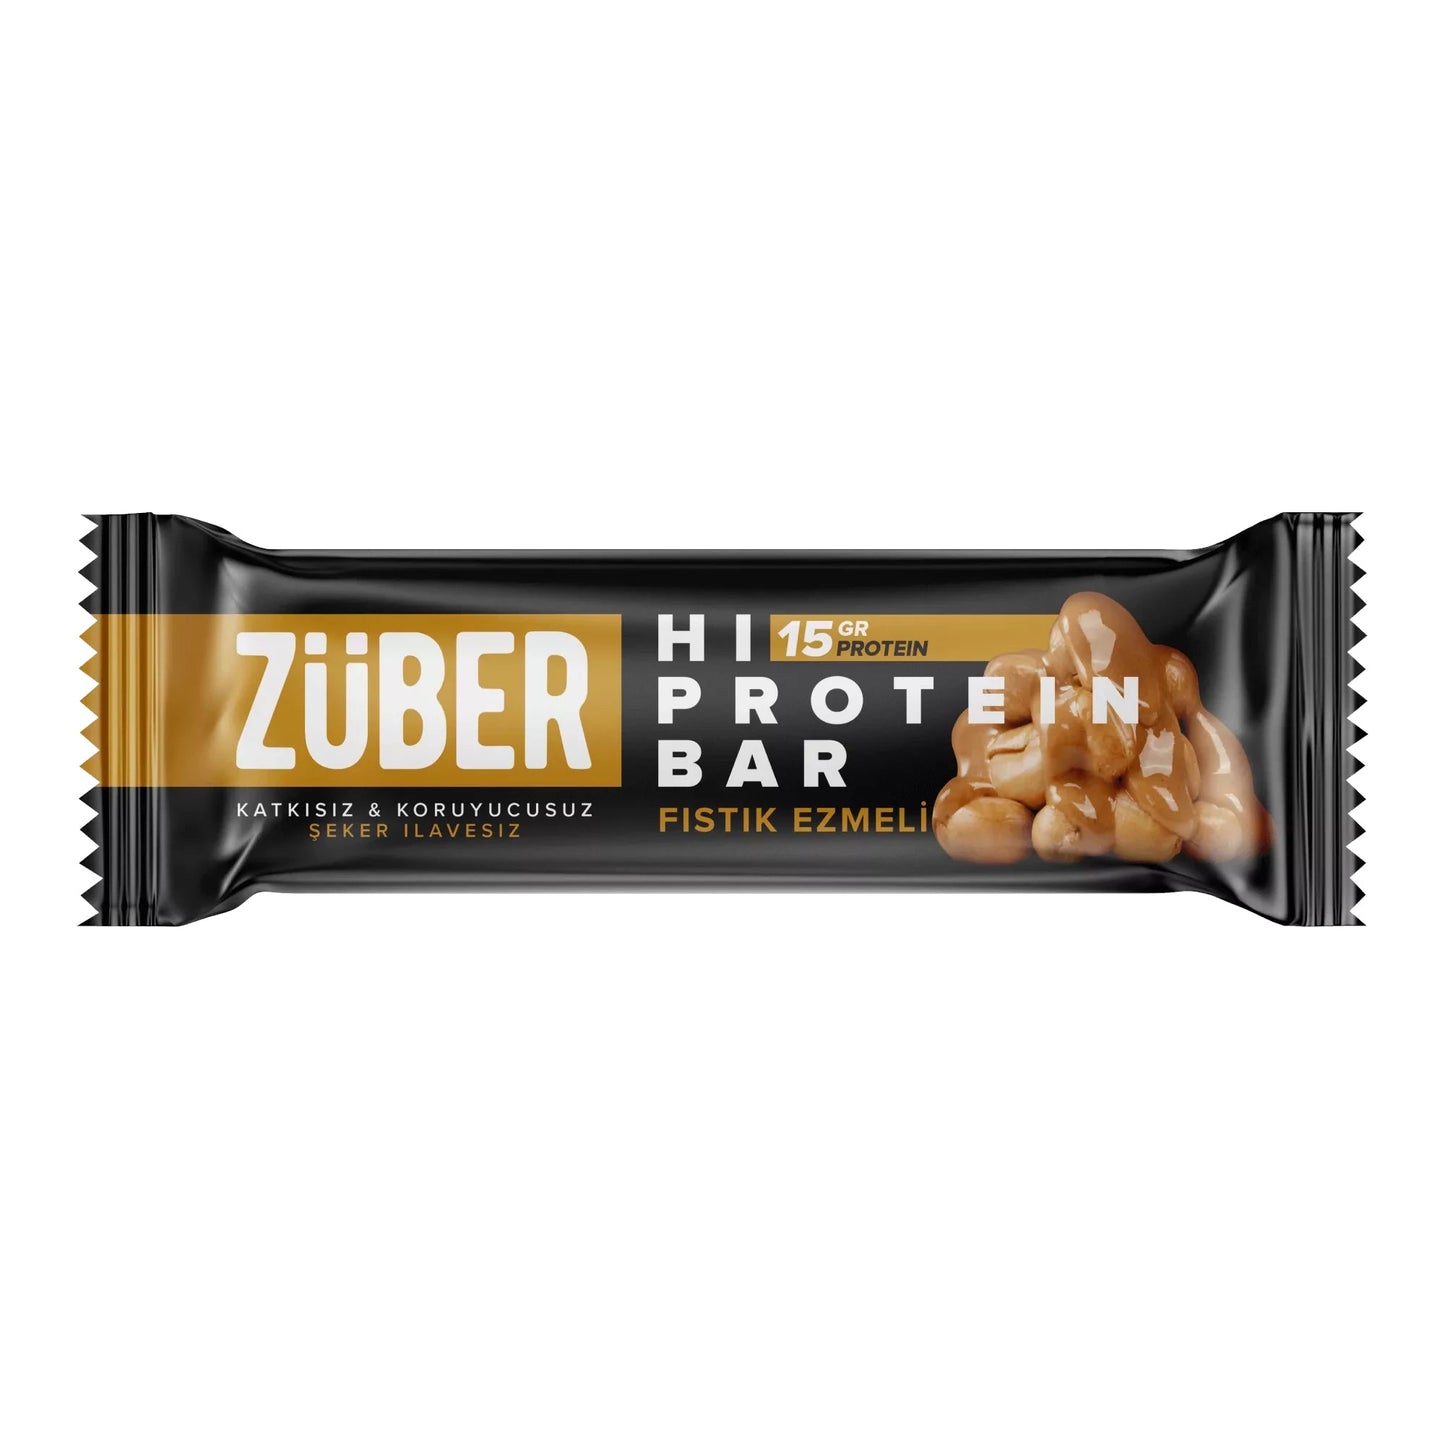 Züber Fıstık Ezmeli Yüksek Protein Bar Kutu (12 Adet)